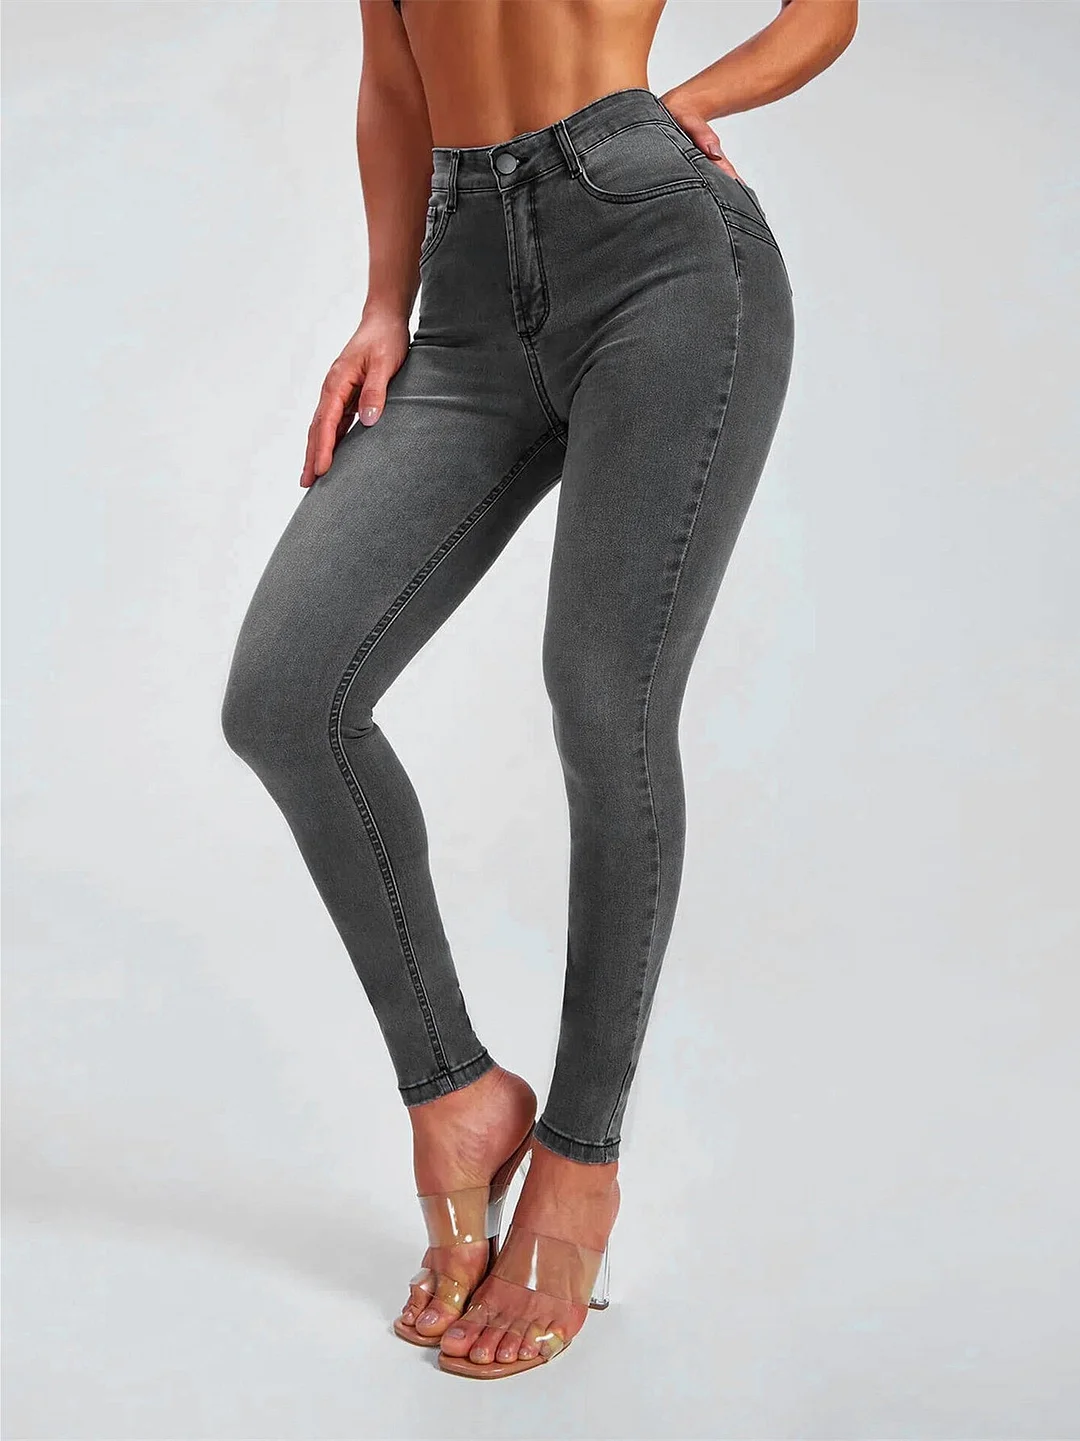 Women's High Waists Slim Stretch Jeans